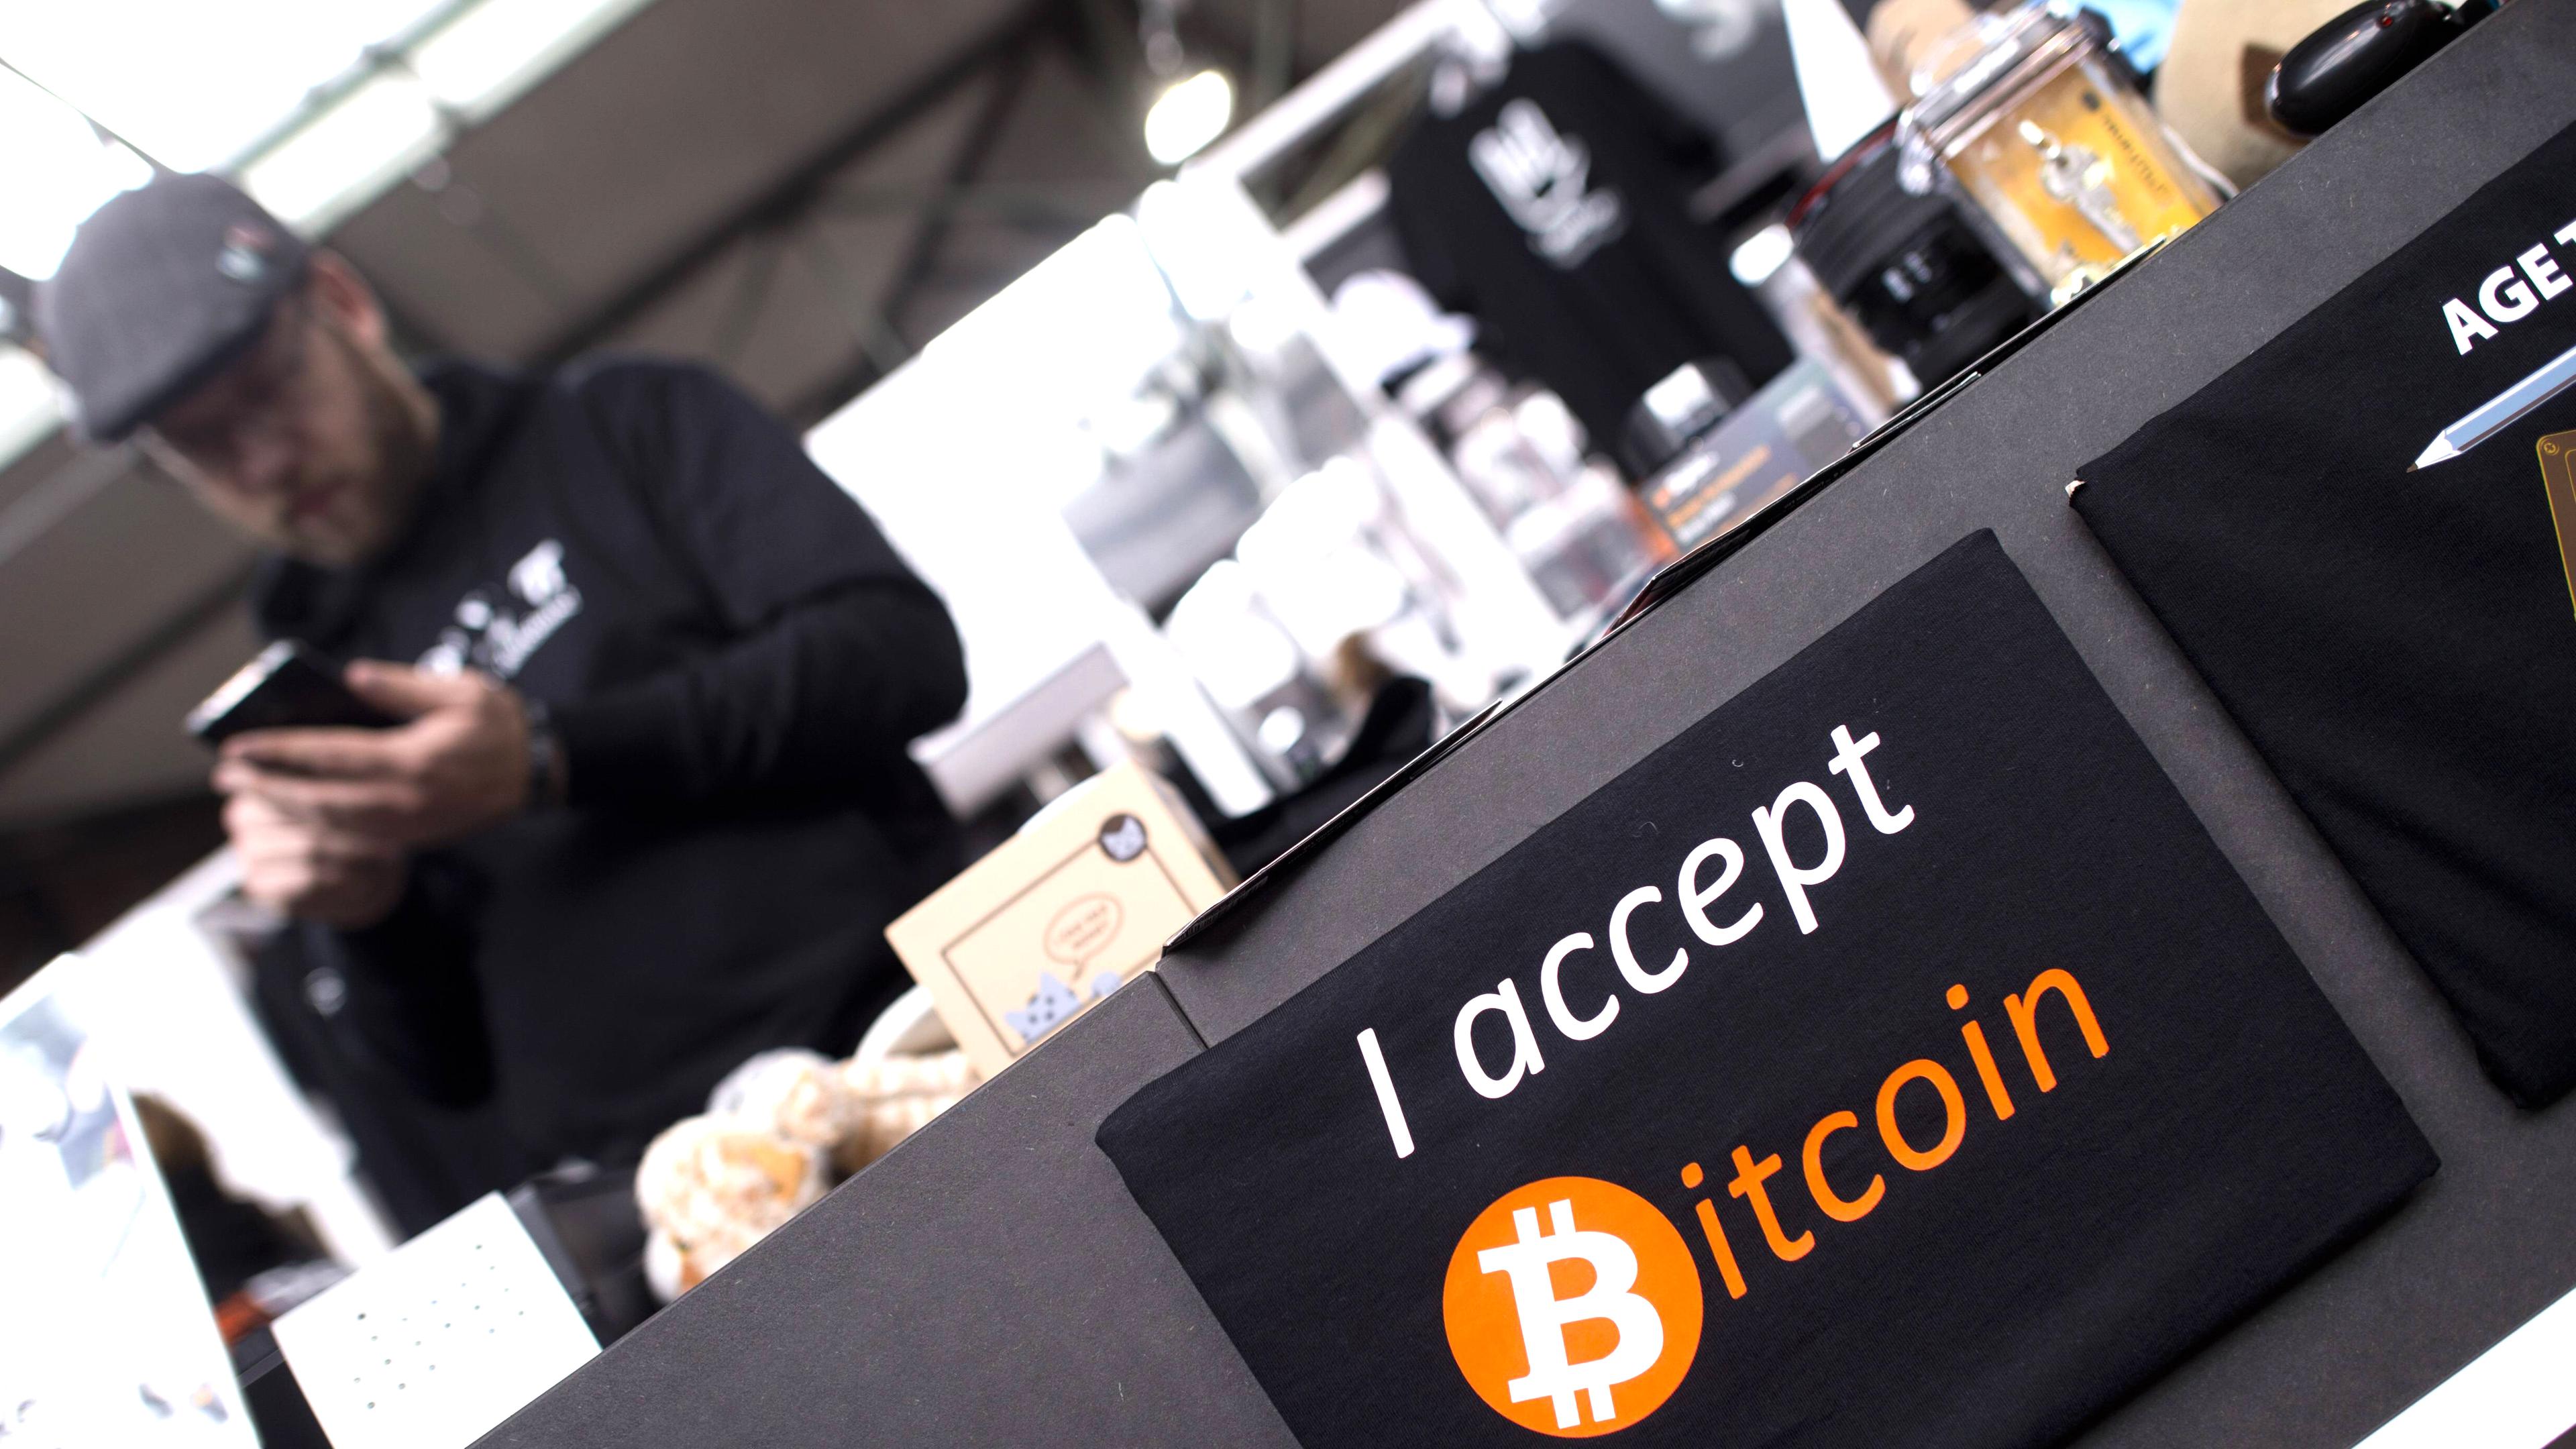 Schild mit Aufschrift "I accept Bitcoin"